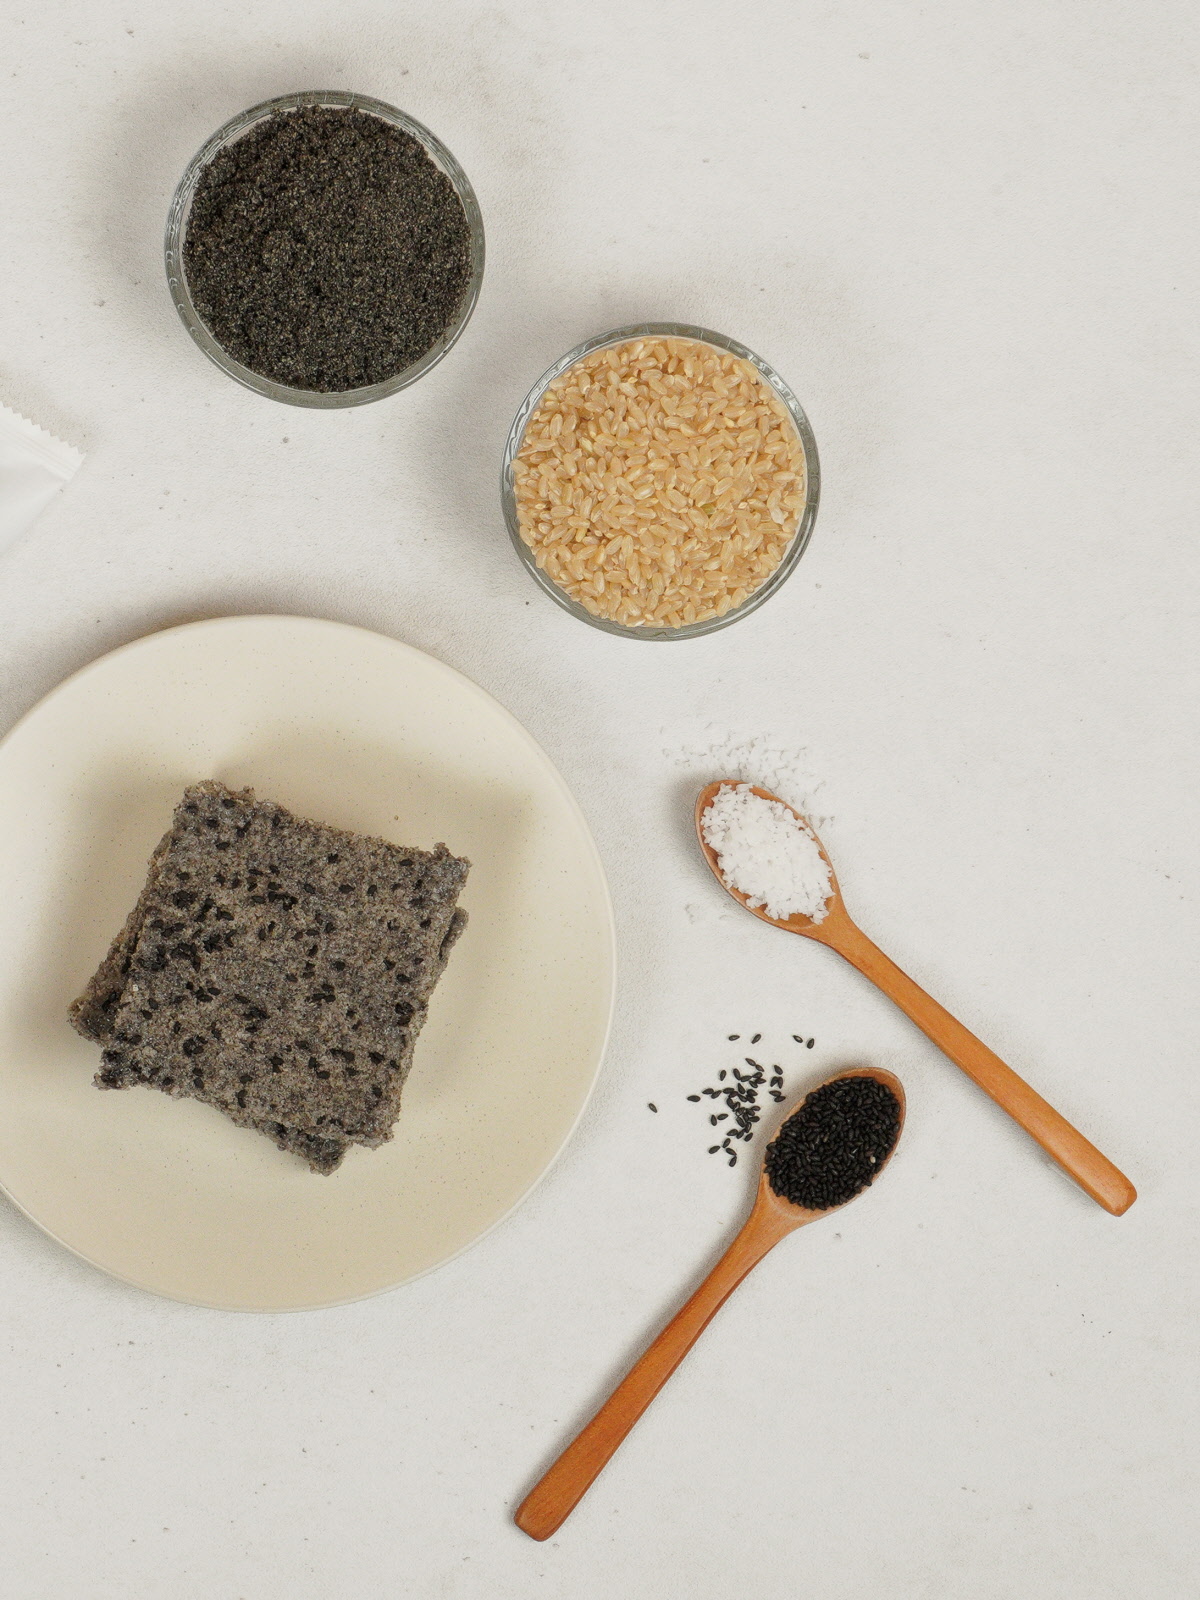 접시 위에 놓인 흑임자현미설기와 원재료인 유기농현미멥쌀, 흑임자깨, 흑임자가루, 천일염의 모습